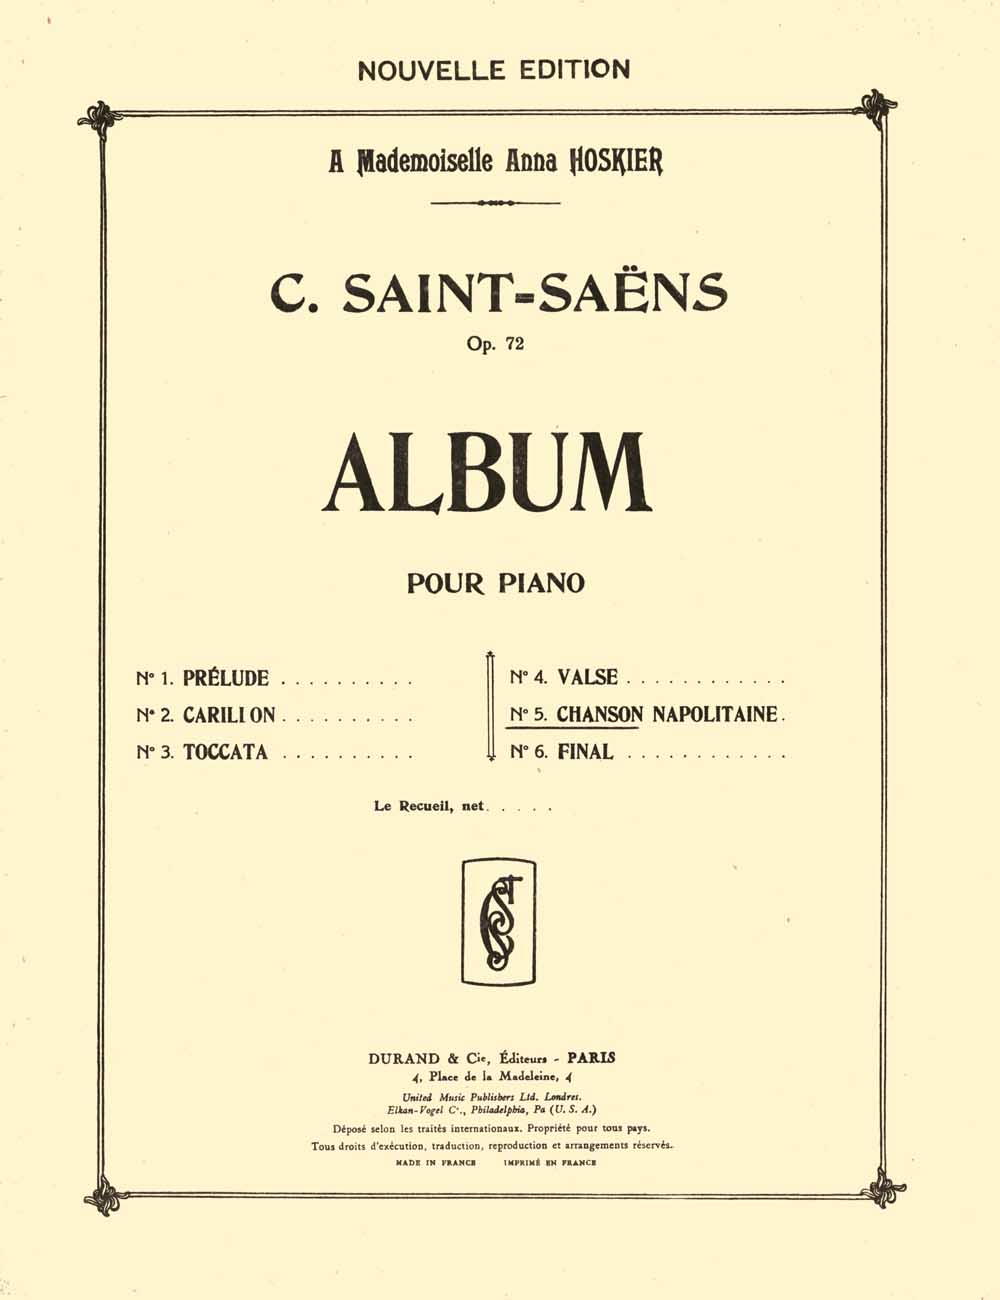 Camille Saint-Sa�ns: Album op. 72 Extrait no 5 Chanson Napolitaine: Piano Solo: